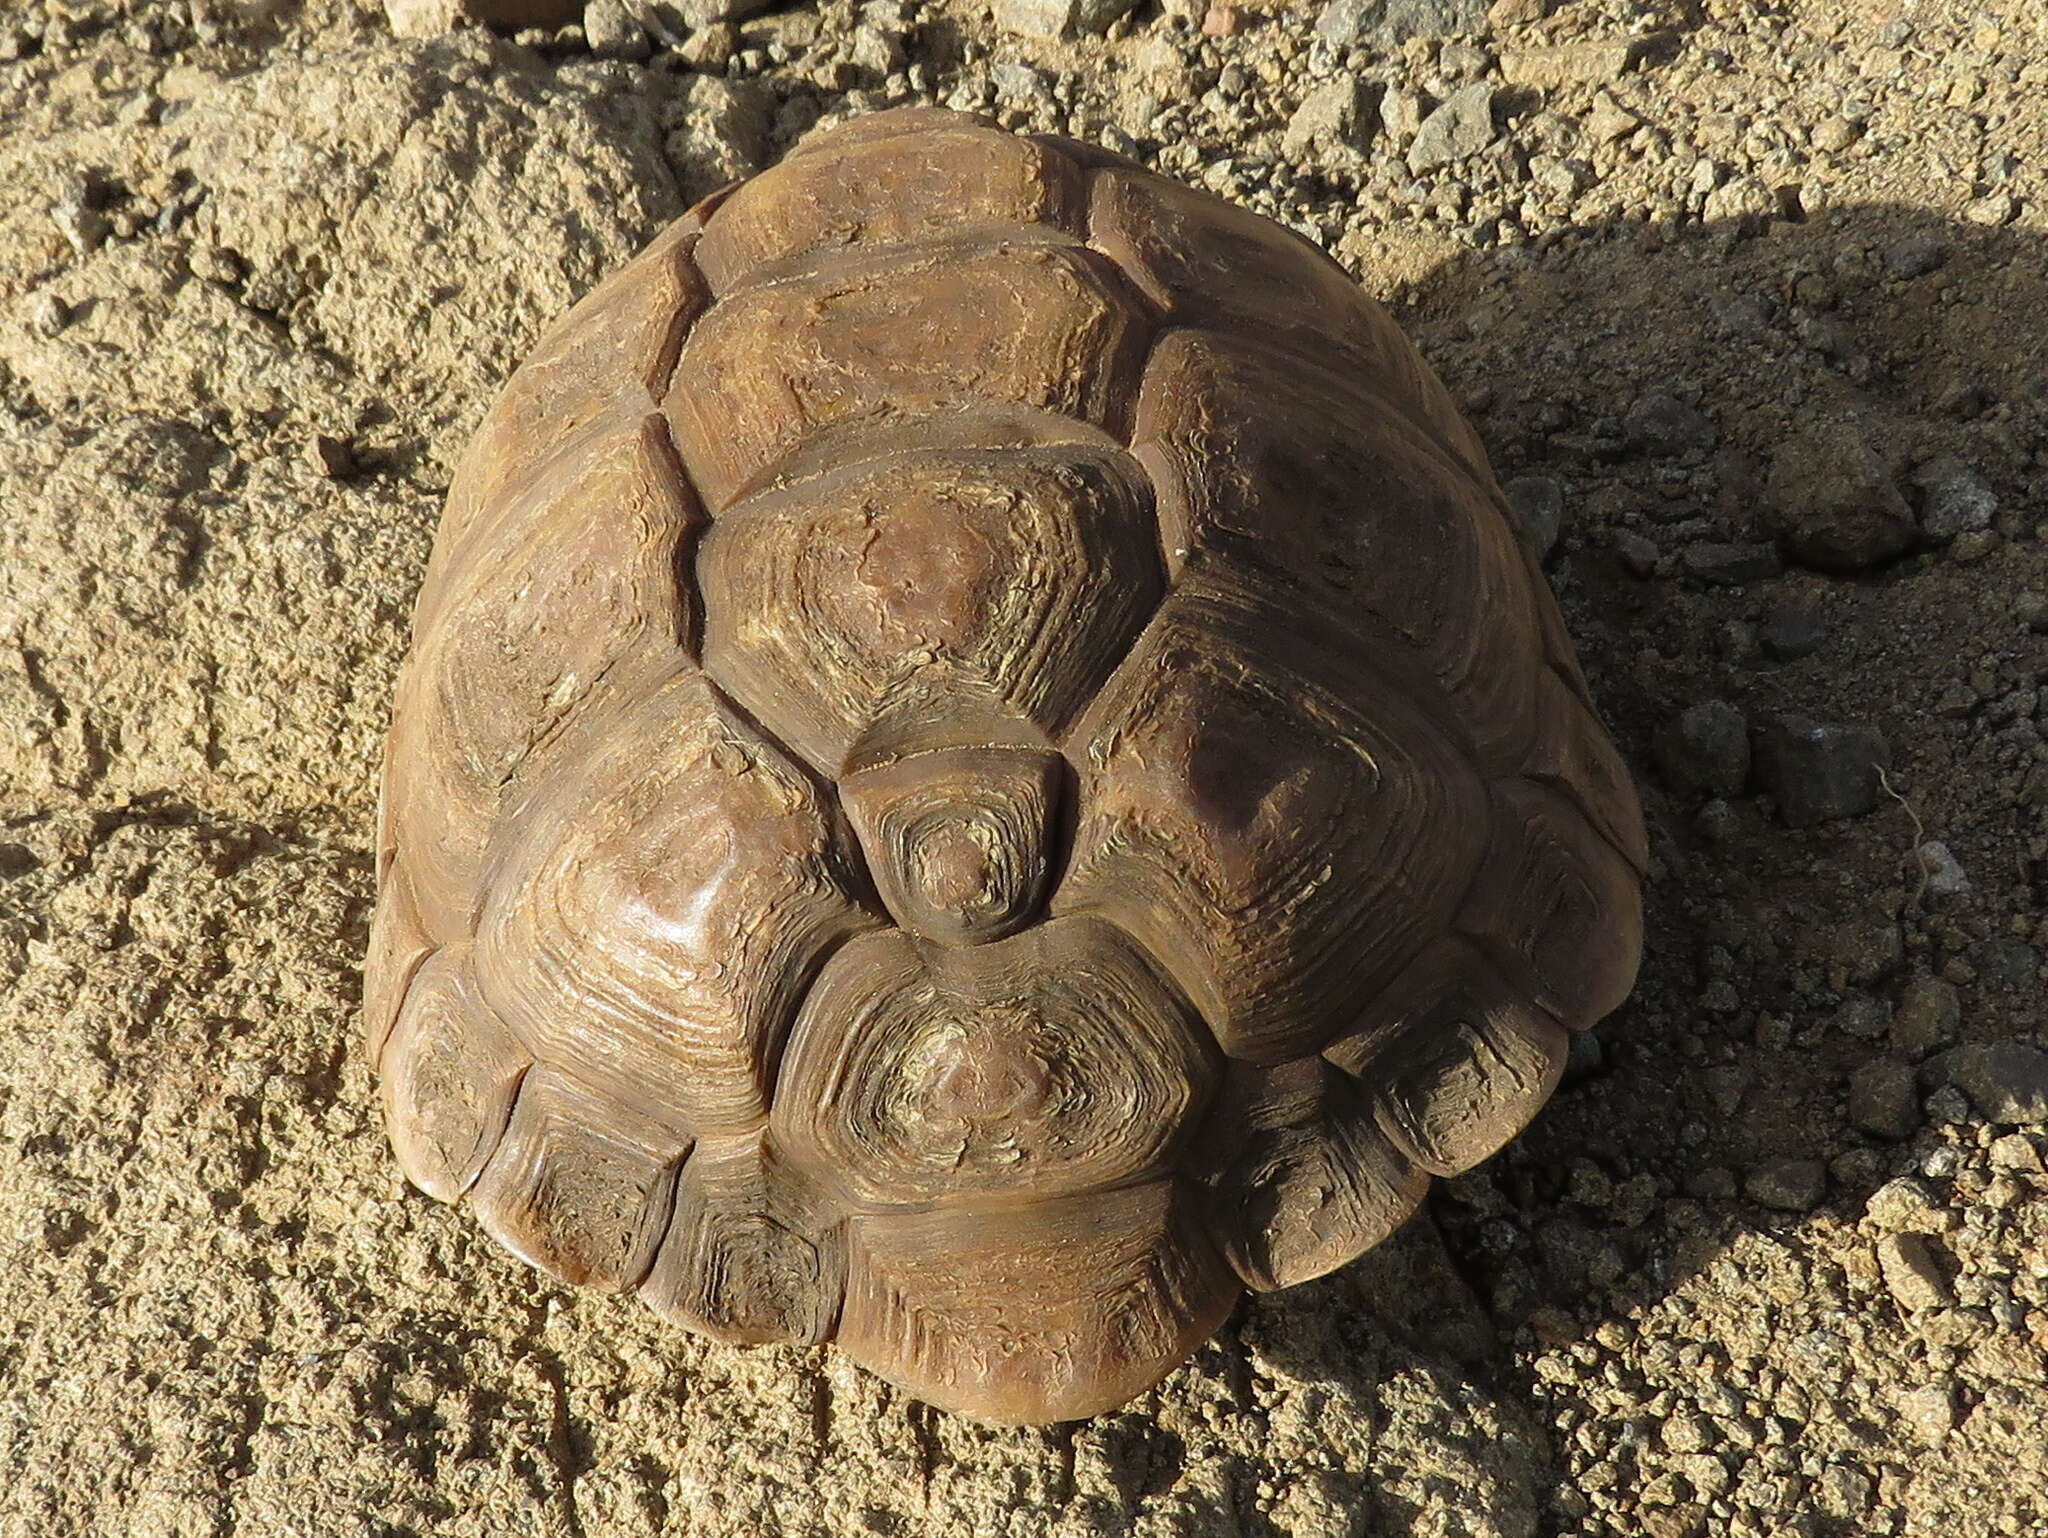 Image of Karroo Tortoise